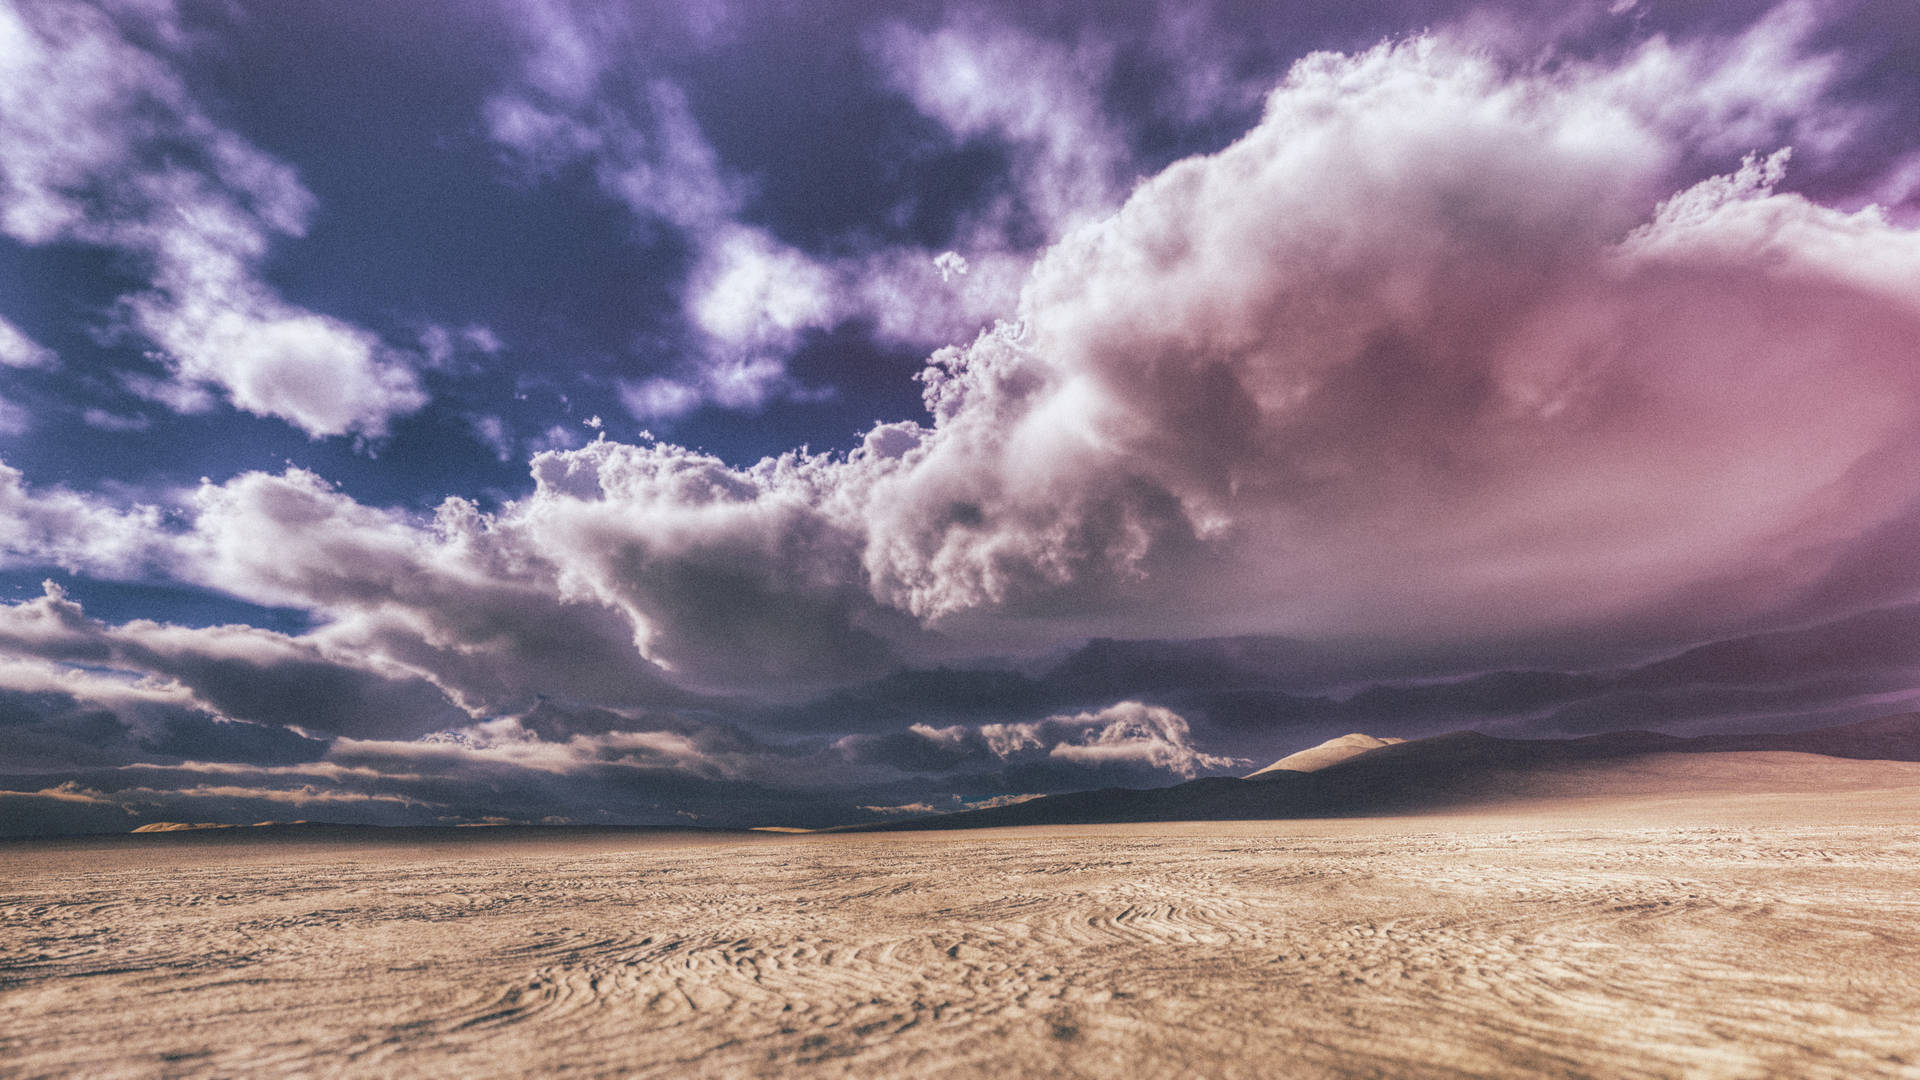 "The Desert Under Dense Clouds" Wallpaper